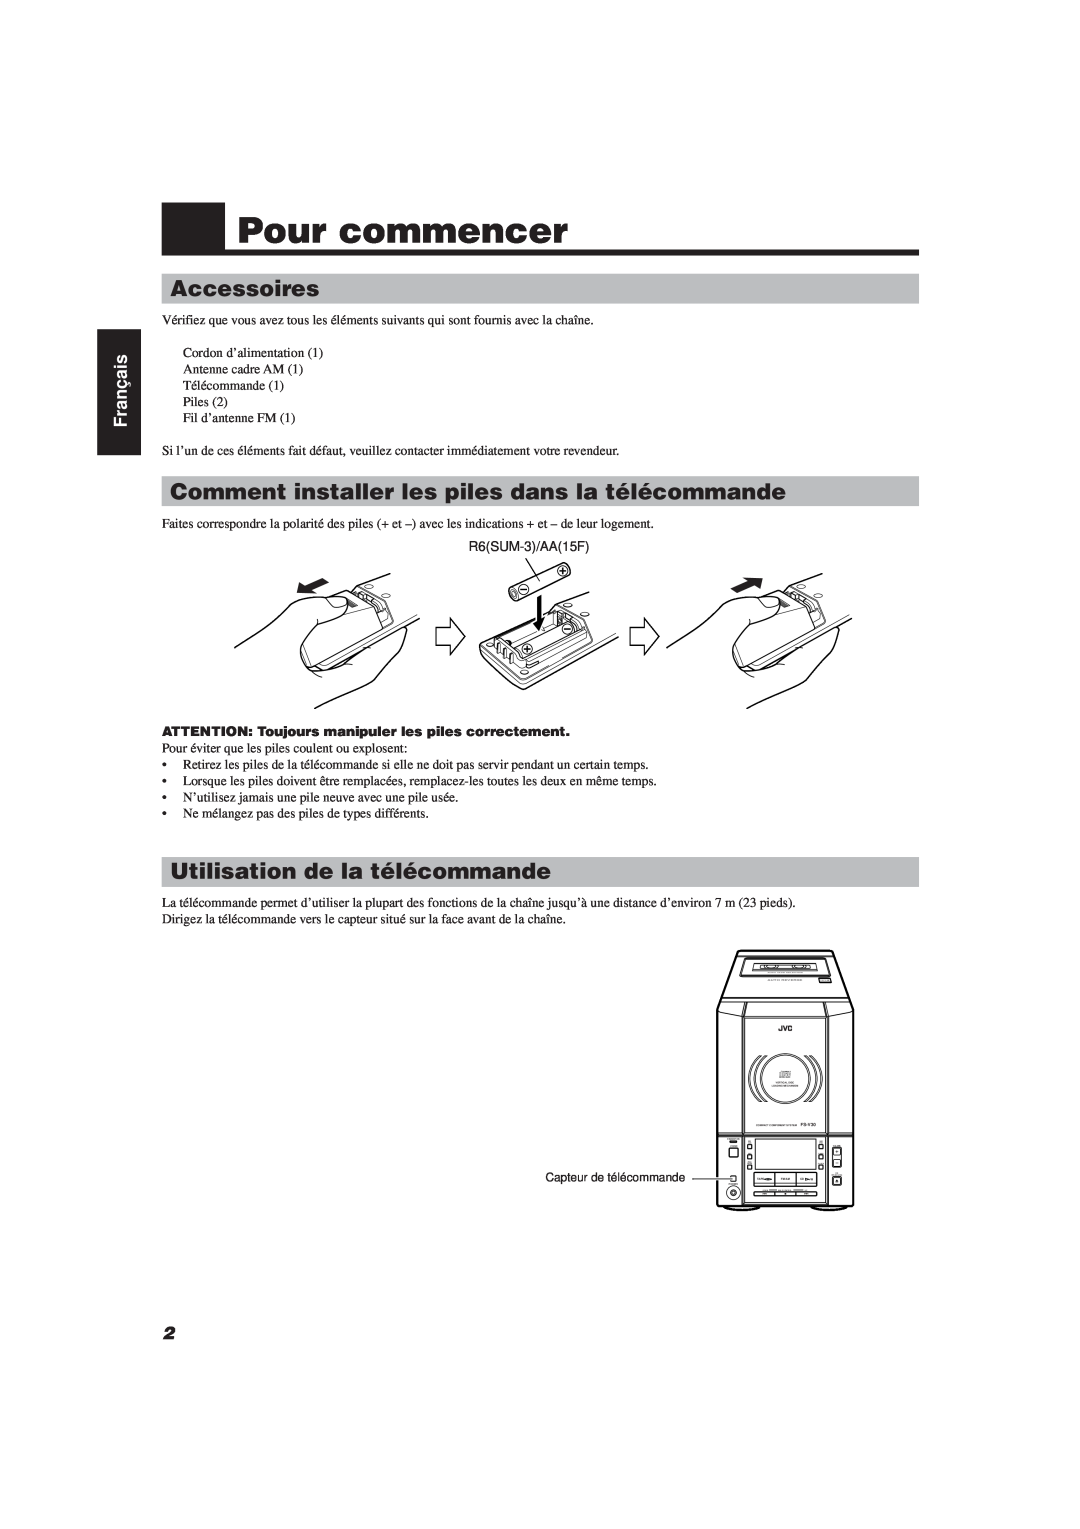 JVC FS-V30 Pour commencer, Accessoires, Comment installer les piles dans la télécommande, Utilisation de la télécommande 